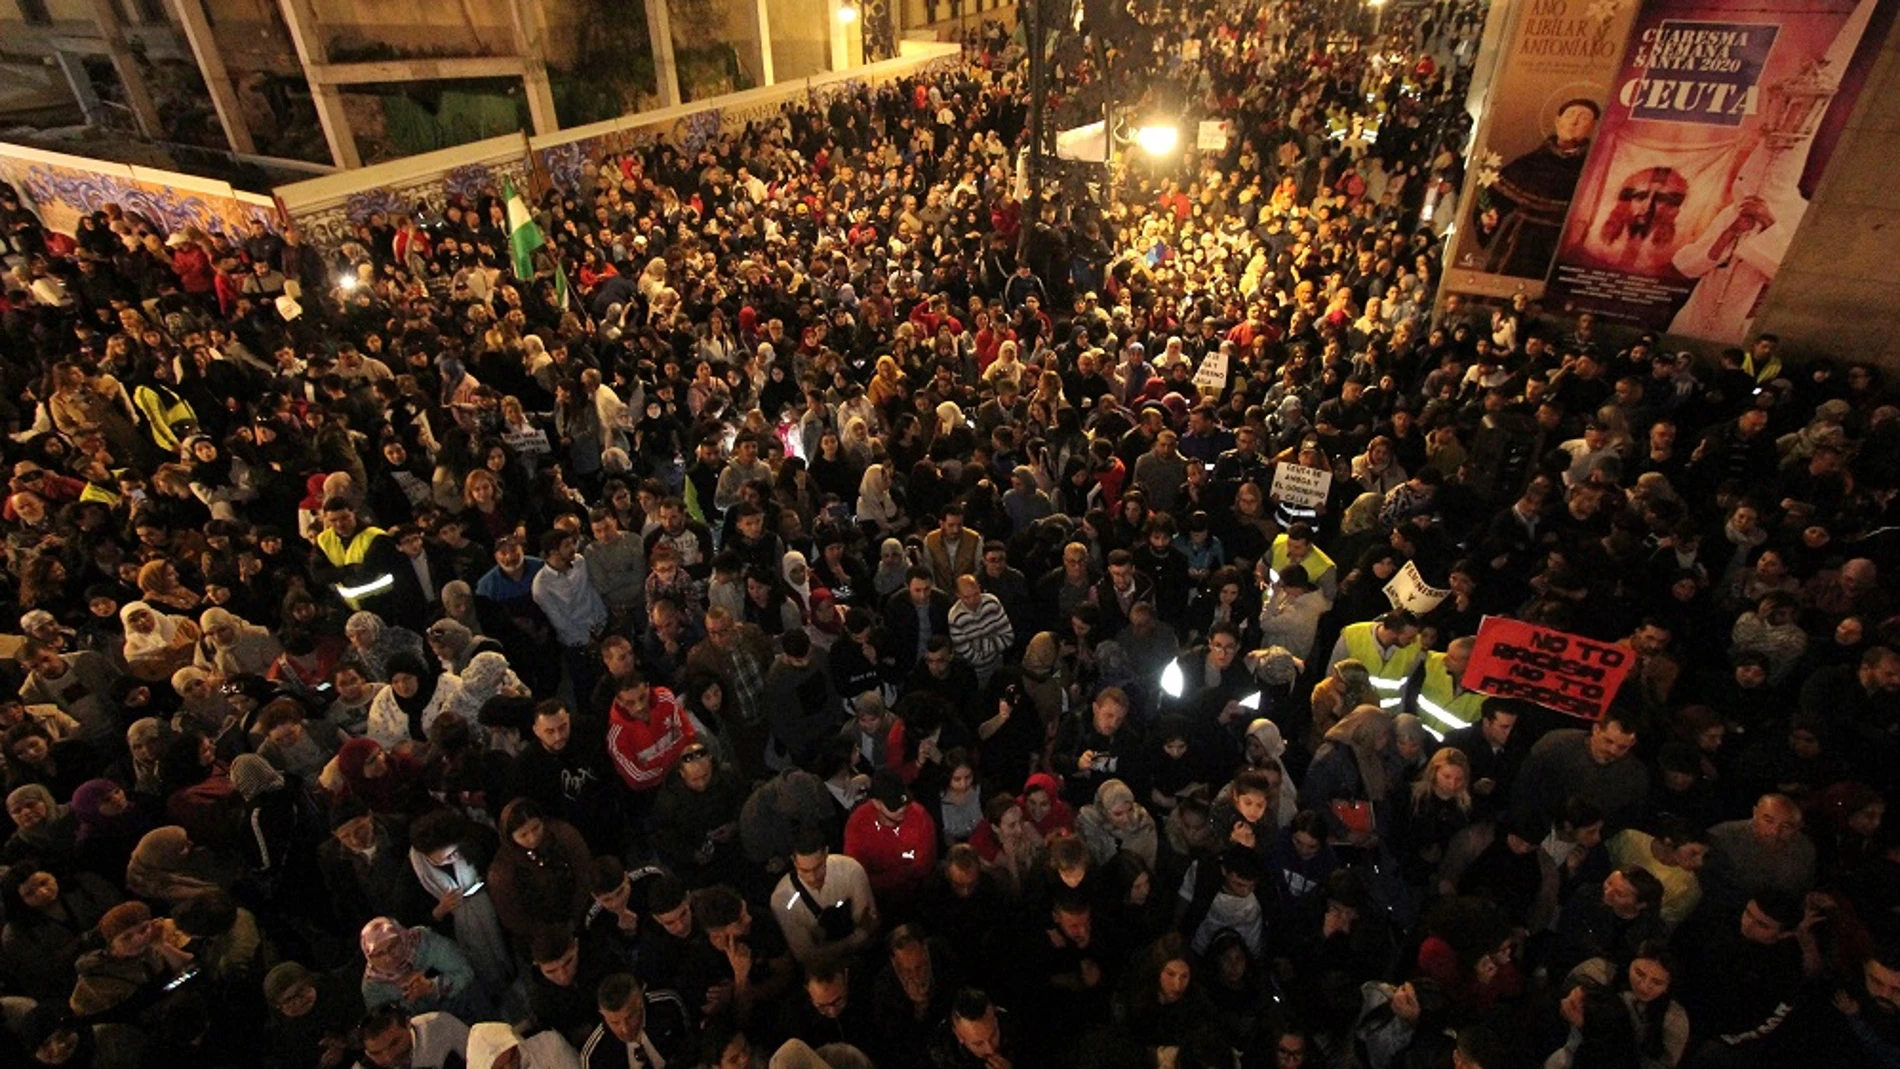 Imagen de la manifestación en Ceuta contra el racismo